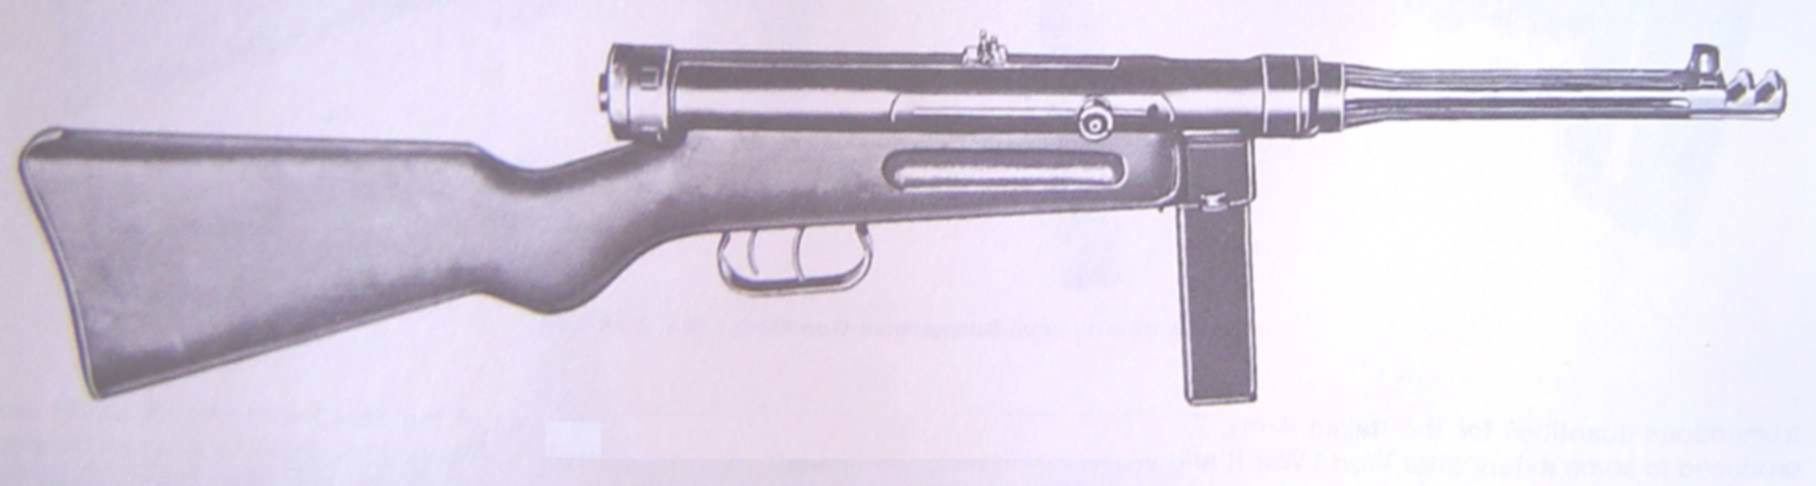 Beretta Mle 1938/42